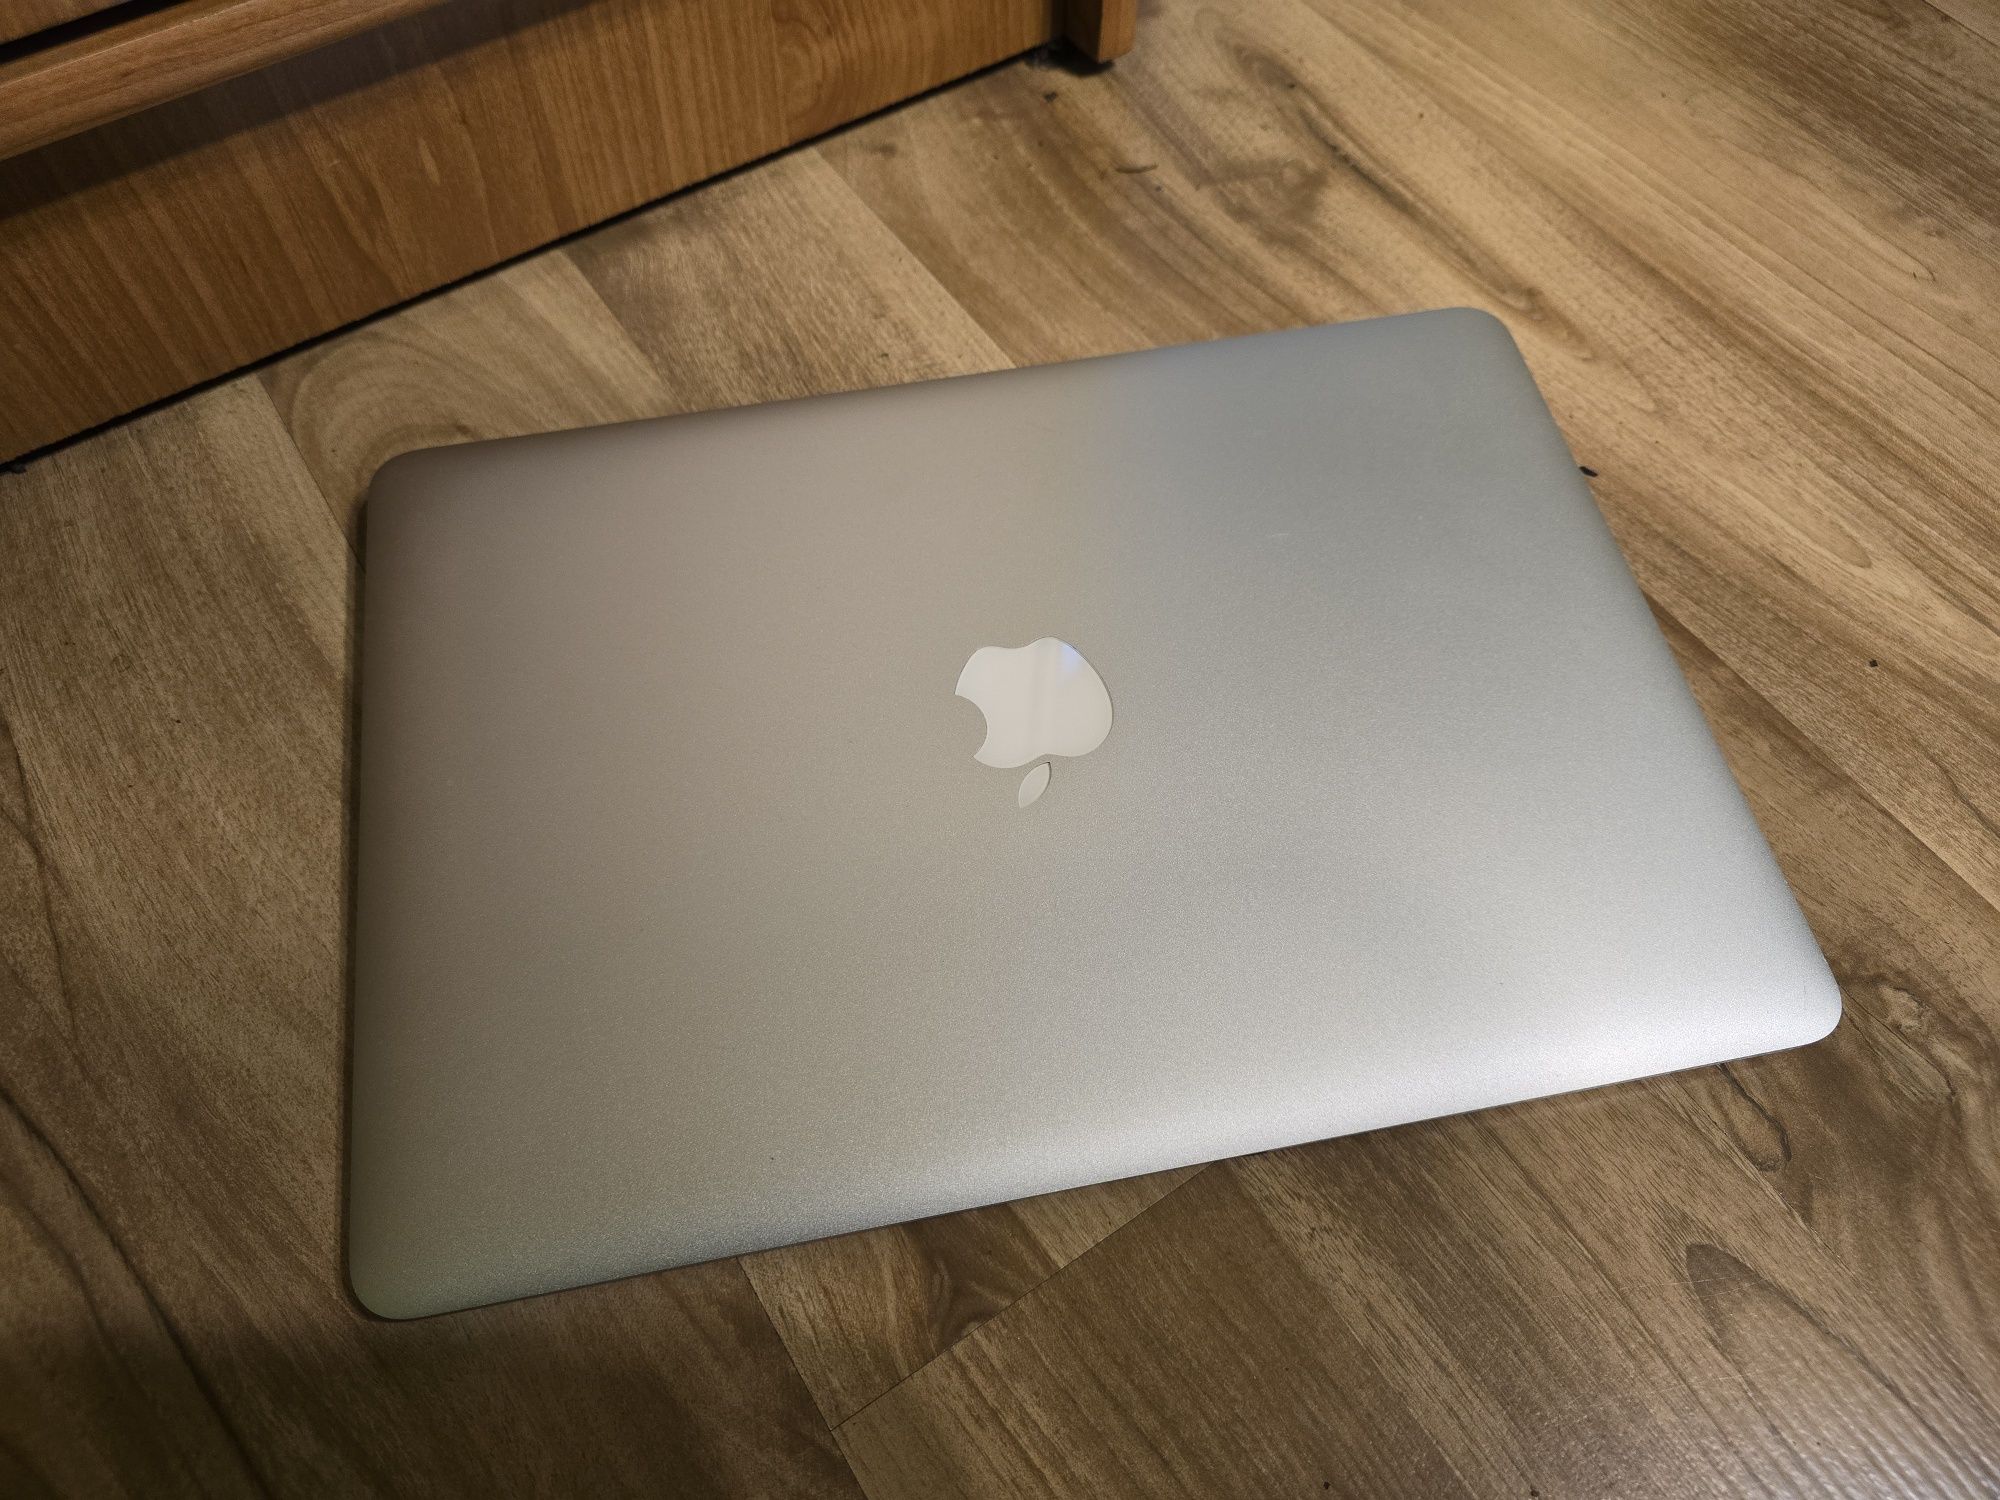 Macbook Air A1466 - intel i5